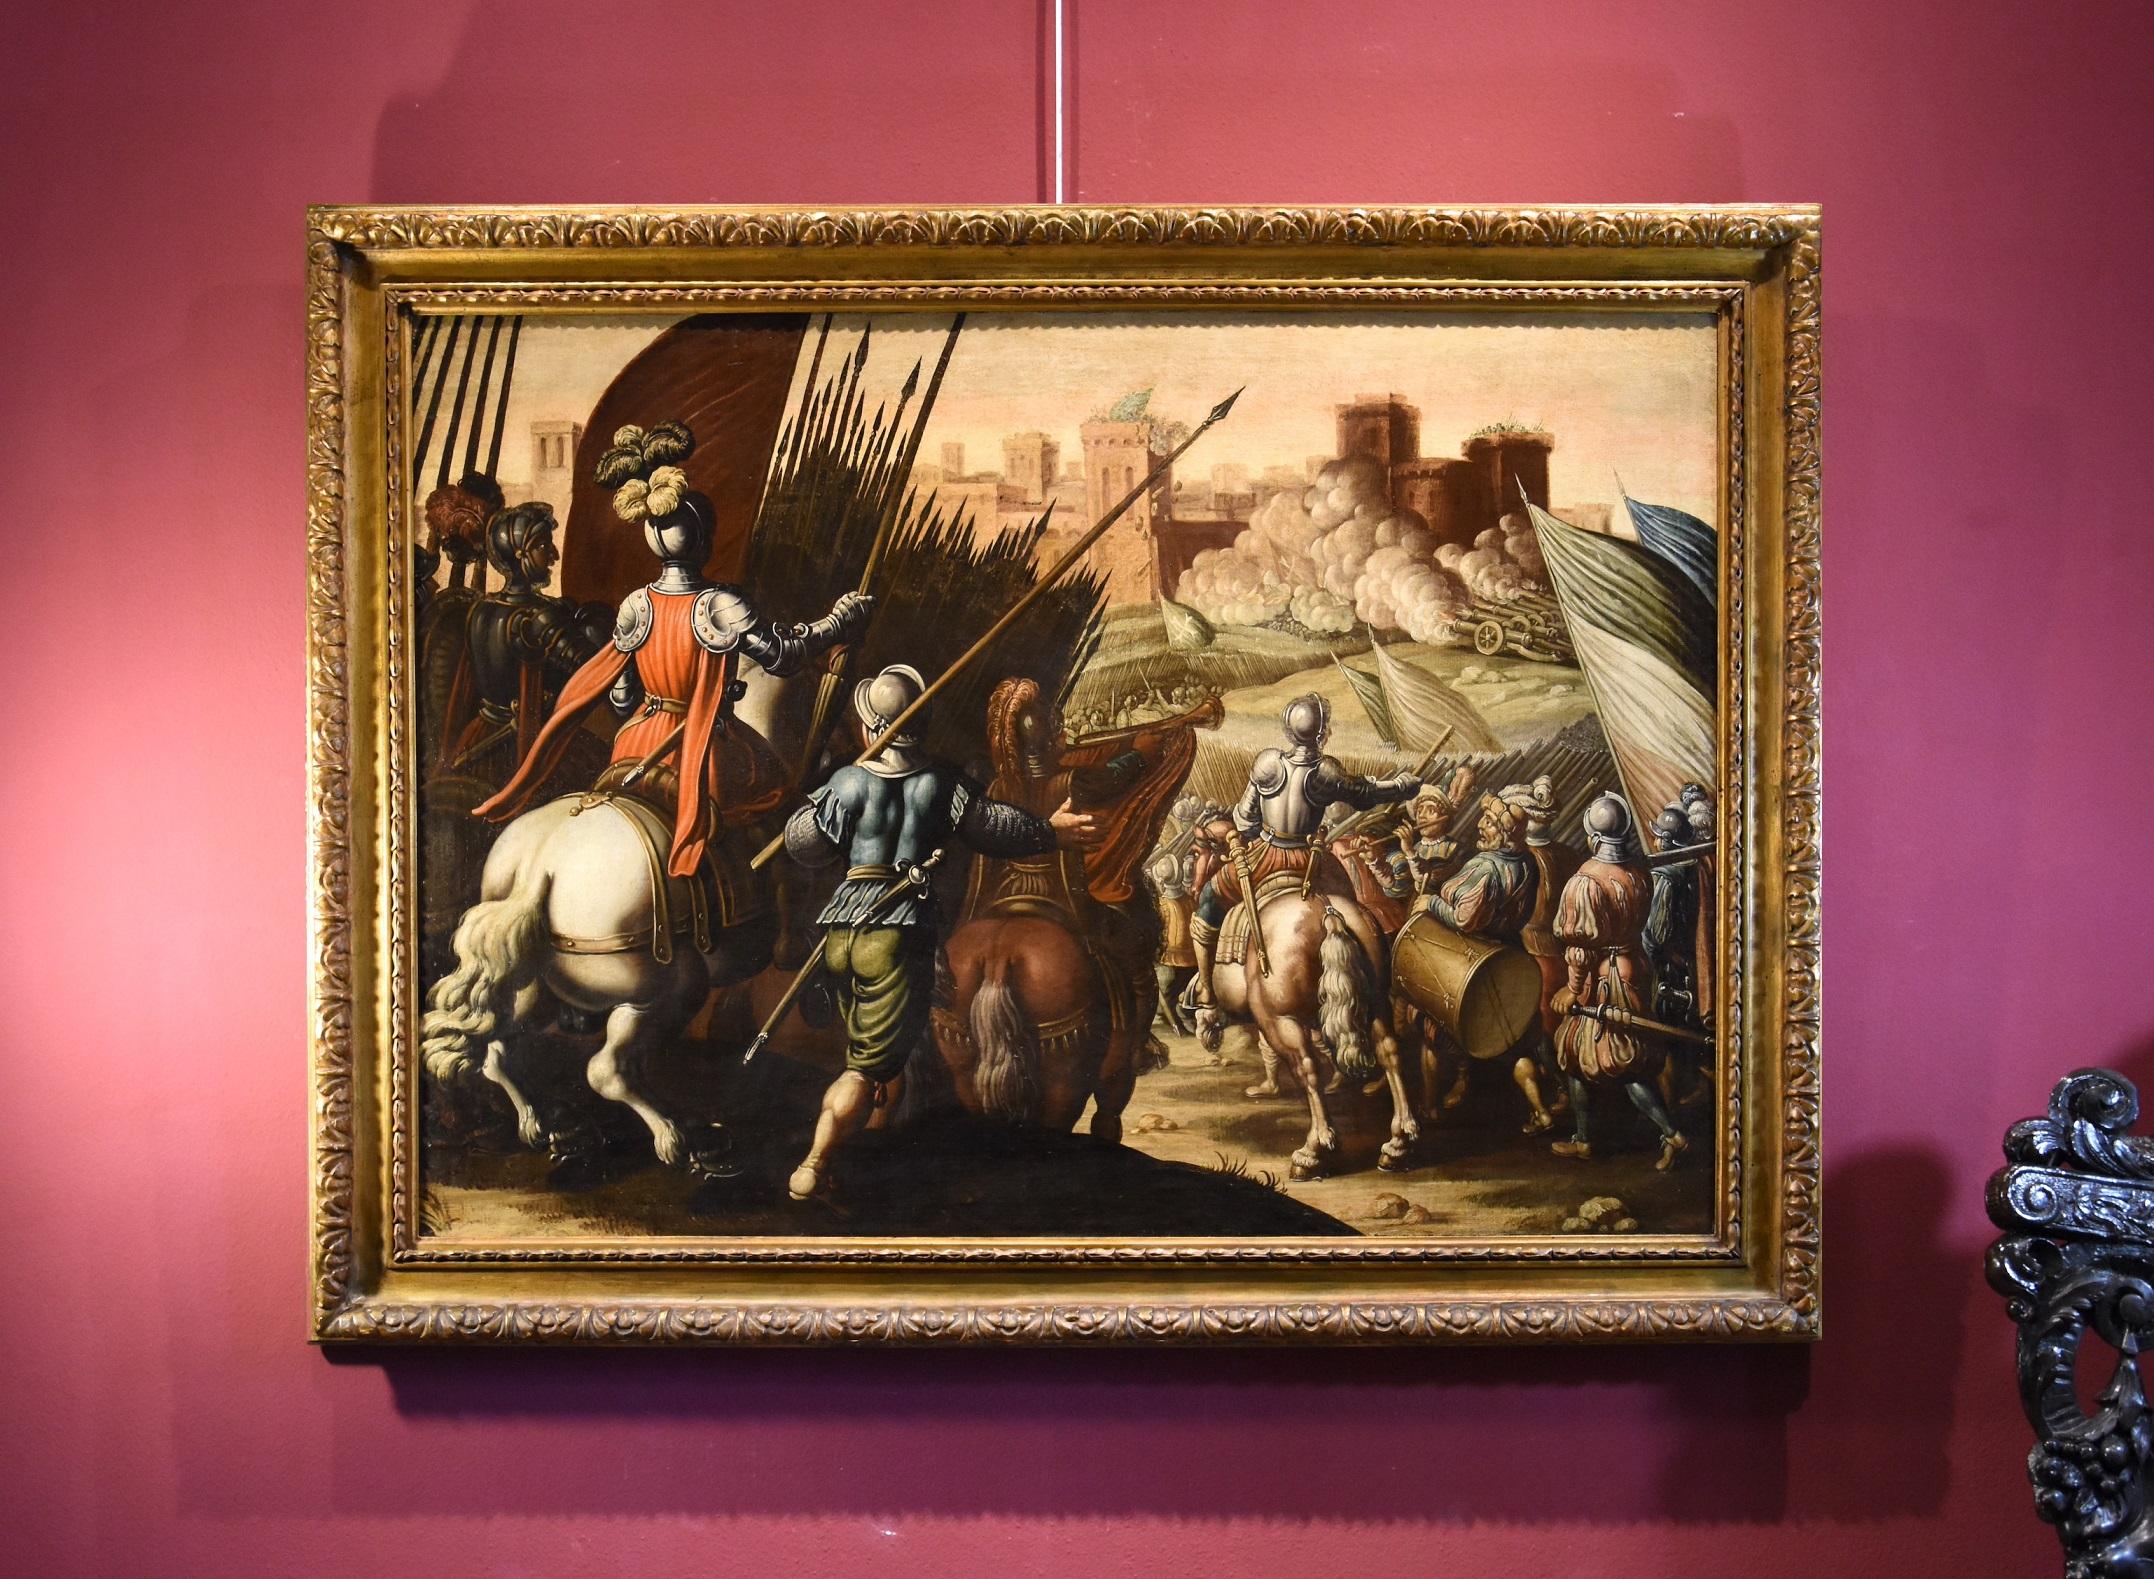 Peinture à l'huile sur toile de la bataille de Tempesta - Paysage ancien du 16/17e siècle - Italie - Painting de Antonio Tempesta (Florence 1555 - Rome 1630)